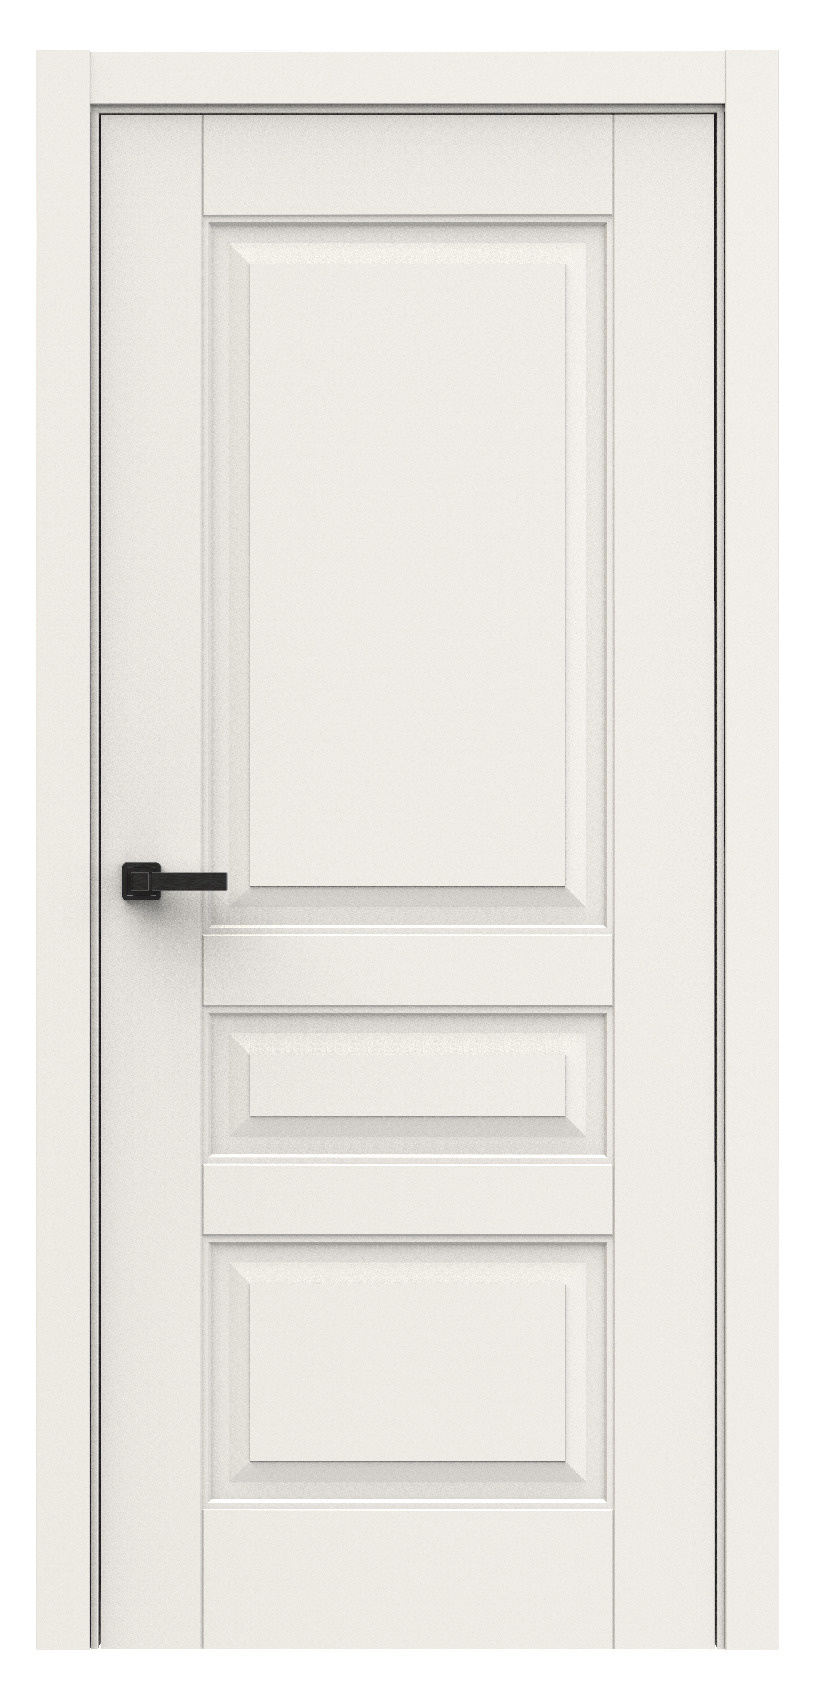 Questdoors Межкомнатная дверь QL3, арт. 18003 - фото №1